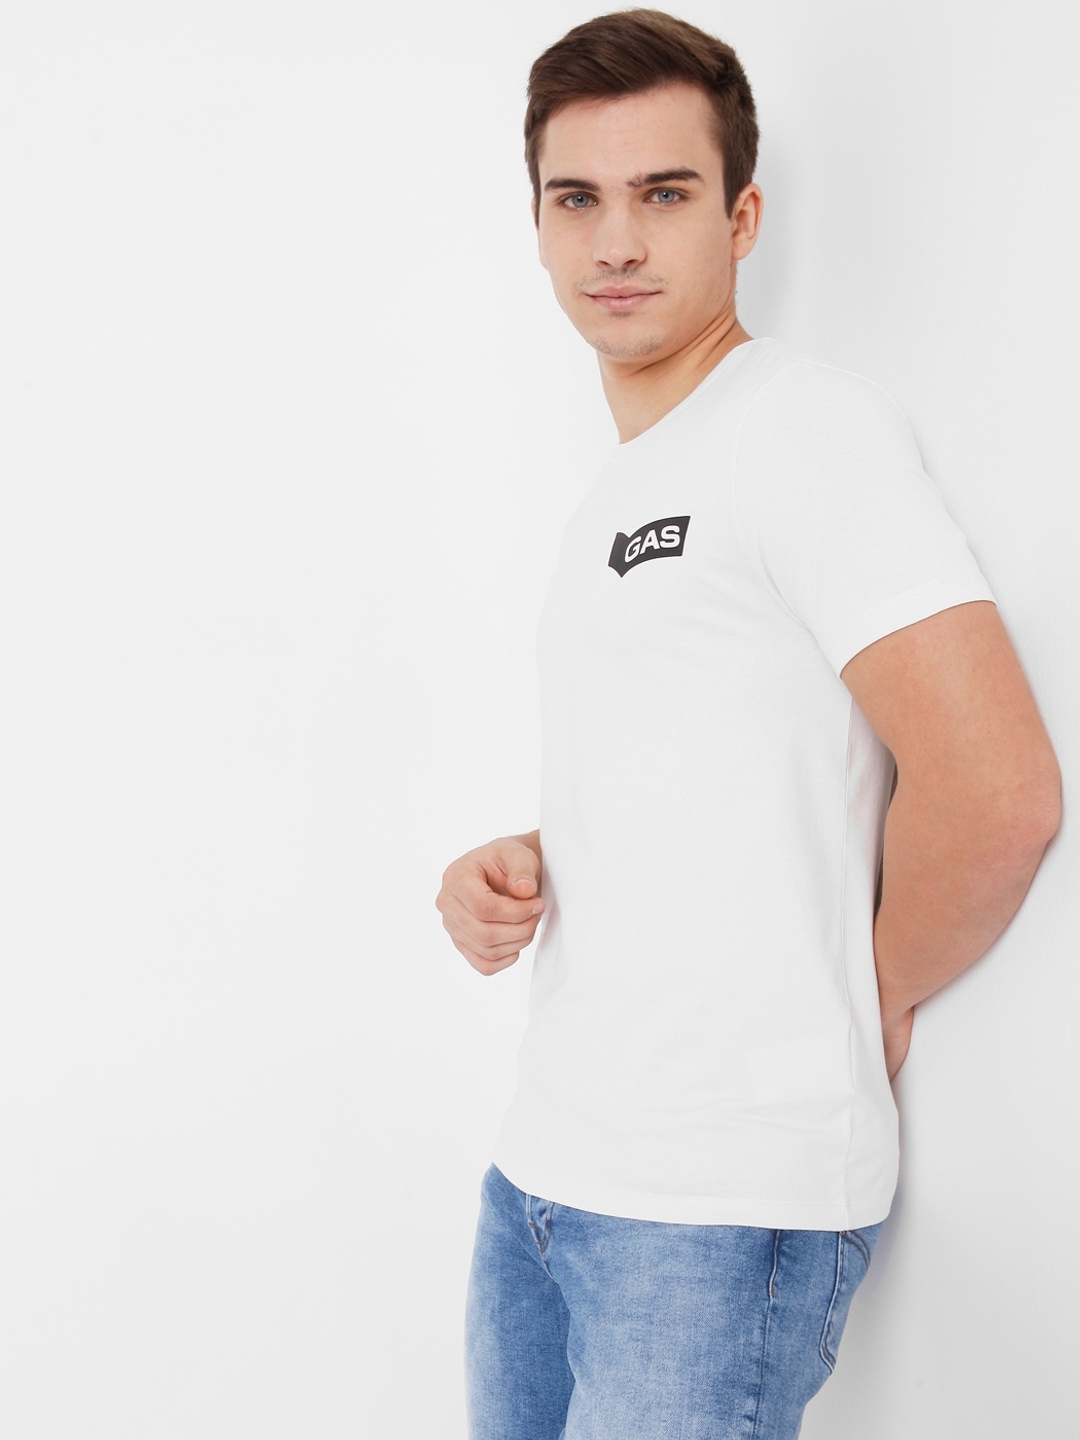 Scuba Style Slim Fit Crew-Neck T-shirt